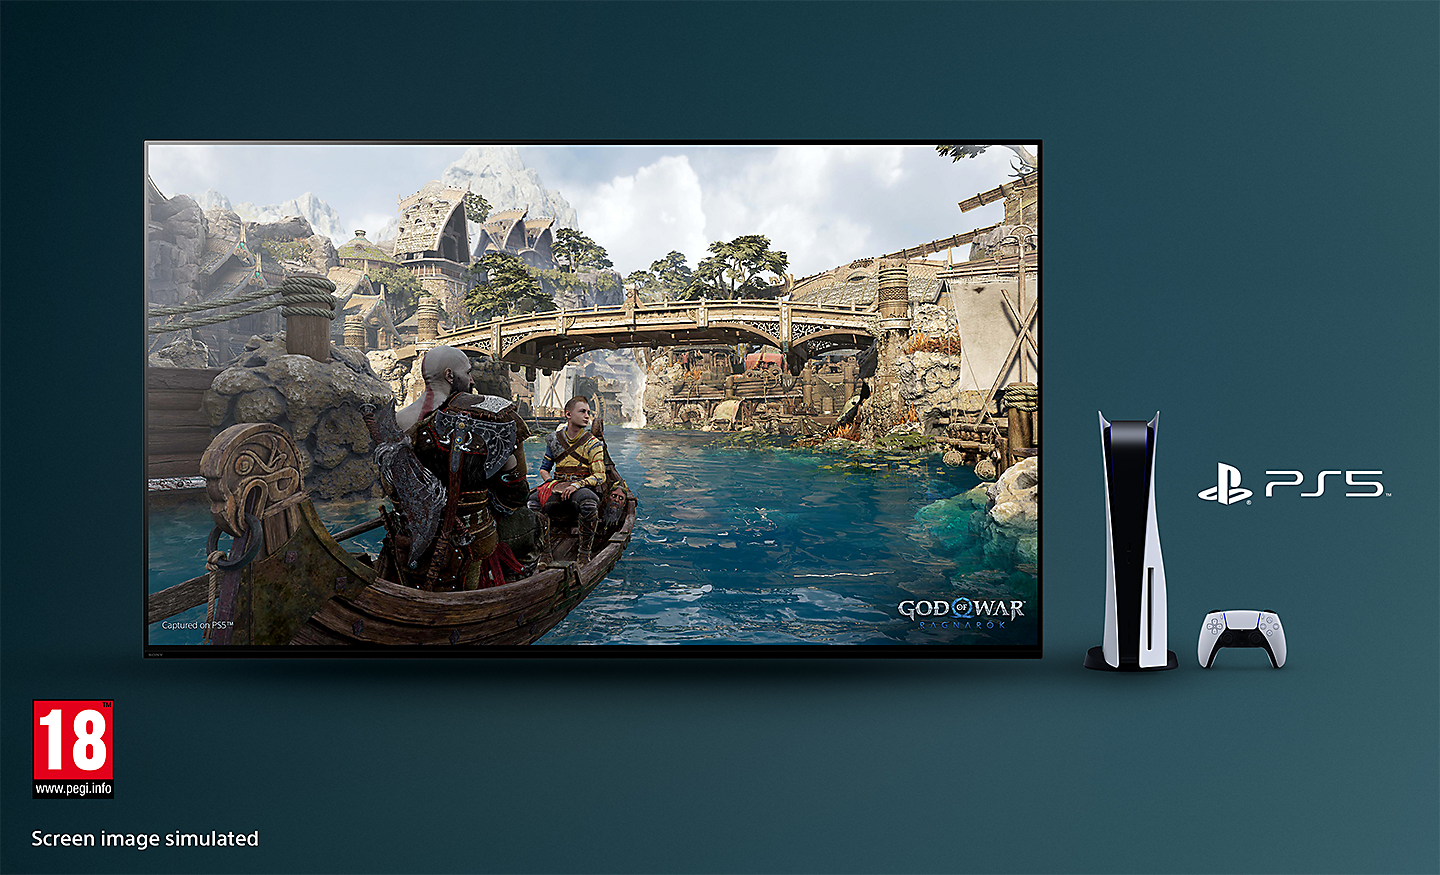 Телевизор BRAVIA што прикажува слика од God of War: Ragnarok на која има чамец на река и мост во заднина, со конзола PS5™, контролор и лого за PS5™ на десната страна на телевизорот